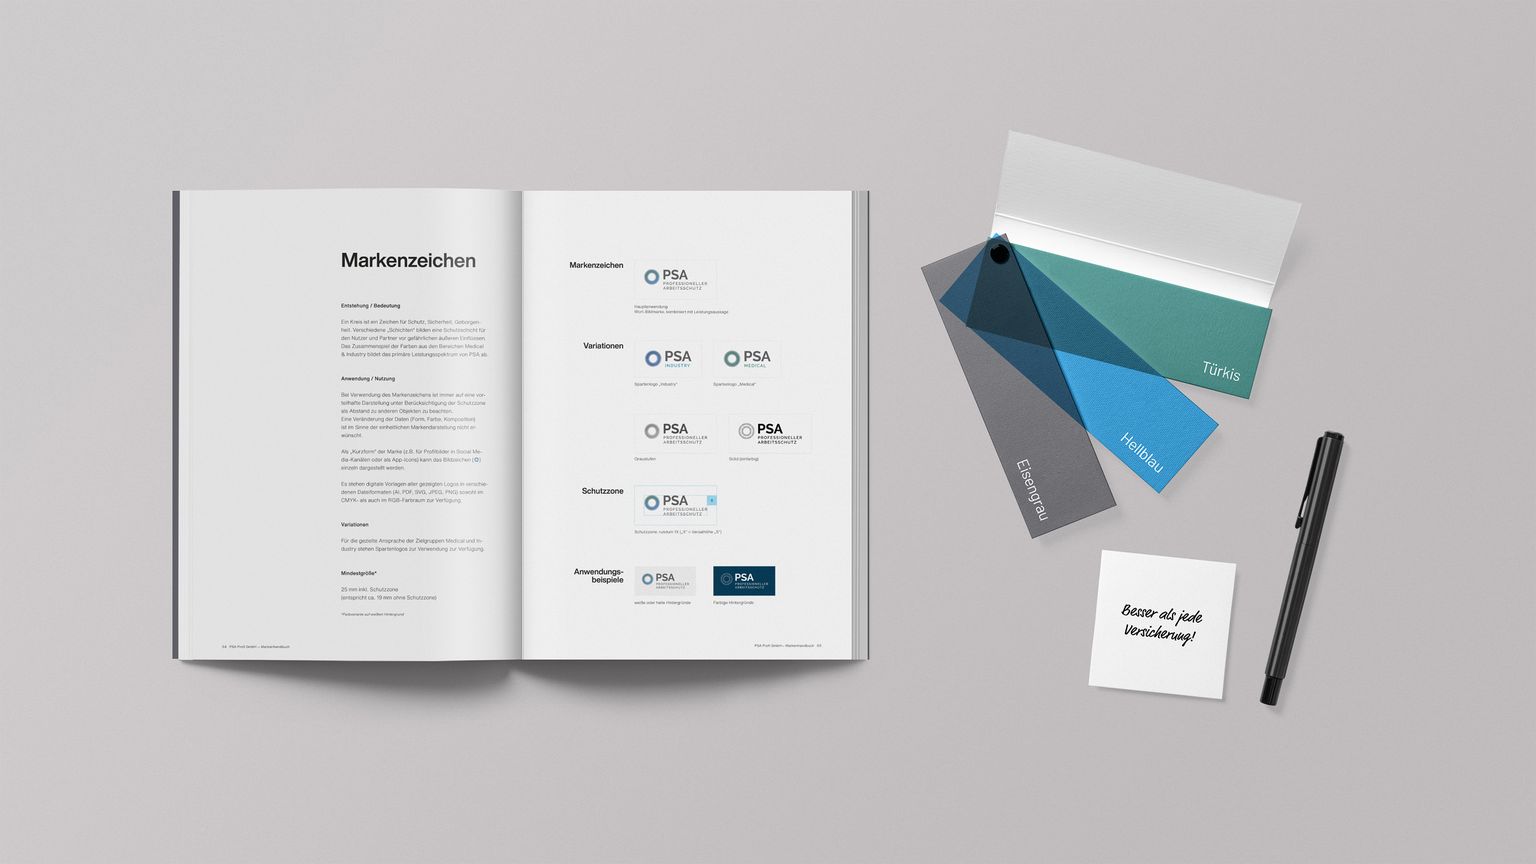 Mockup PRA Profi Corporate Design Manual